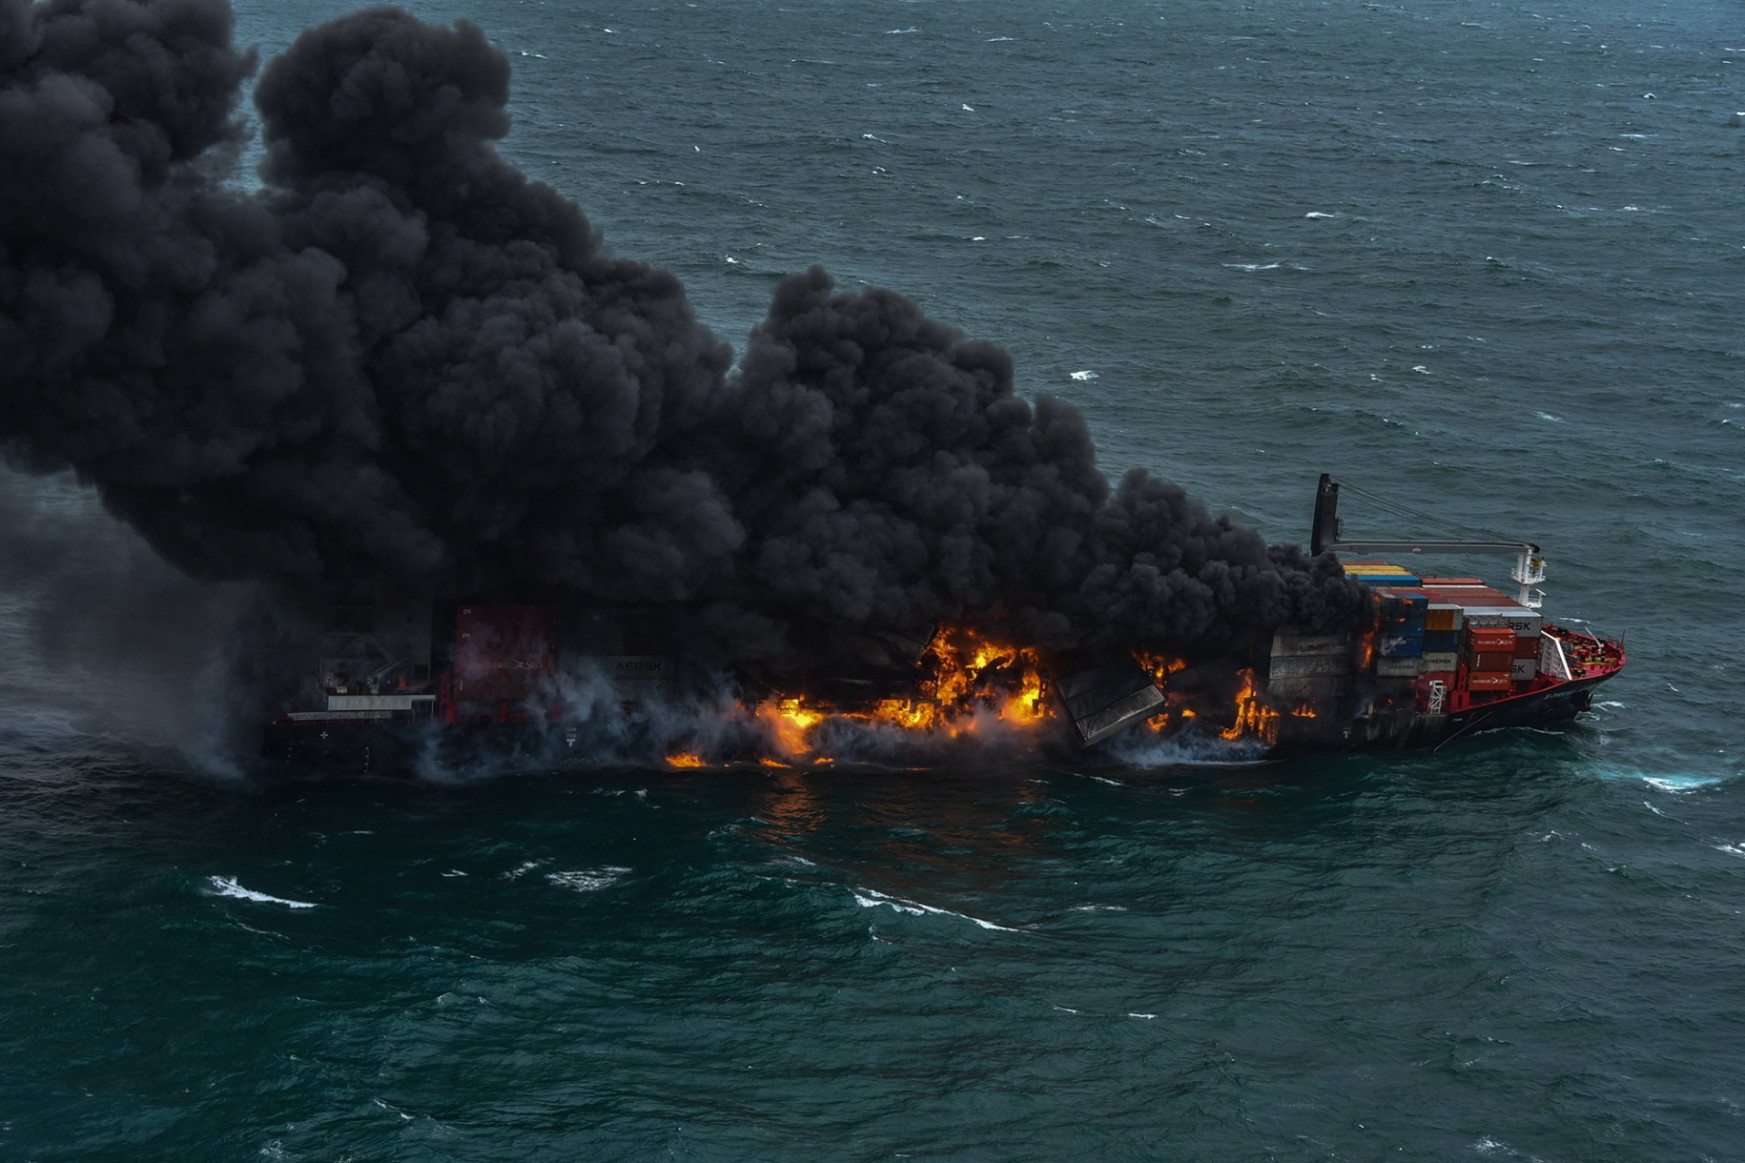 Ökológiai katasztrófától tartanak a szakértők, miután süllyedni kezdett a veszélyes vegyi anyagokkal megpakolt és kigyulladt teherhajó